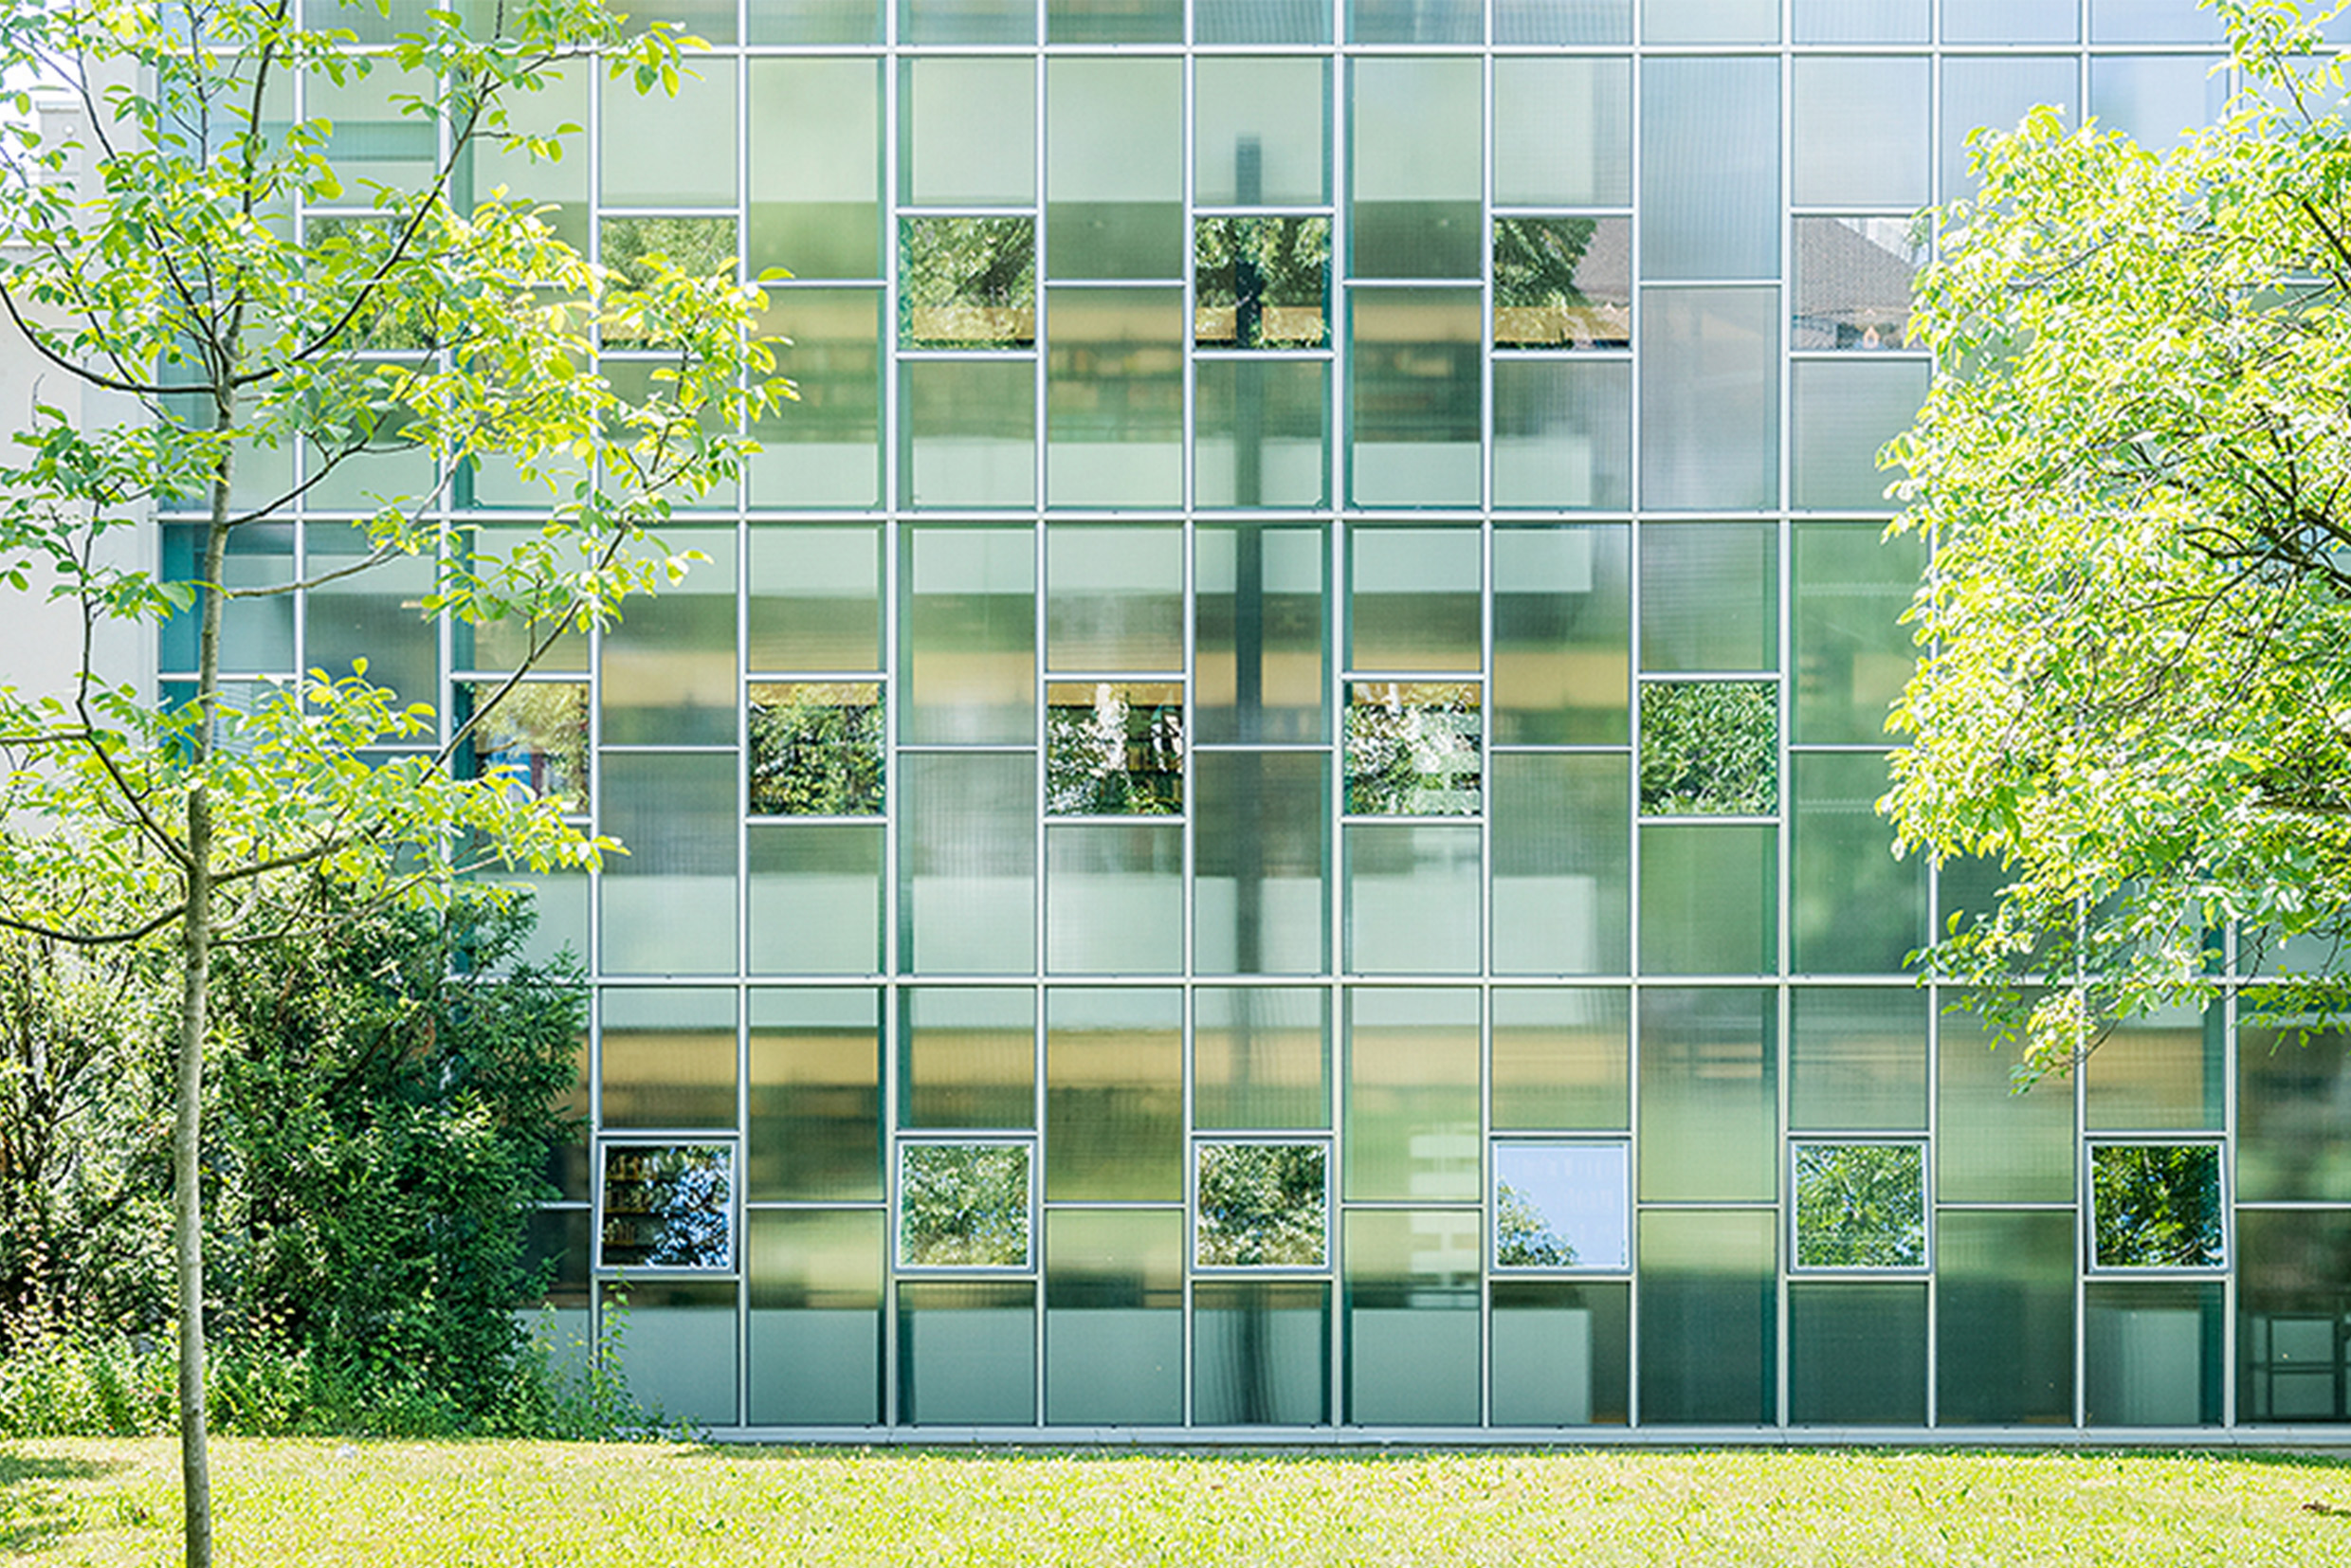 Das Bild zeigt die grosse Glasfront der Bibliothek am Deutschen Seminar. Links und rechts stehen grüne Bäume, davor liegt eine saftige Wiese.